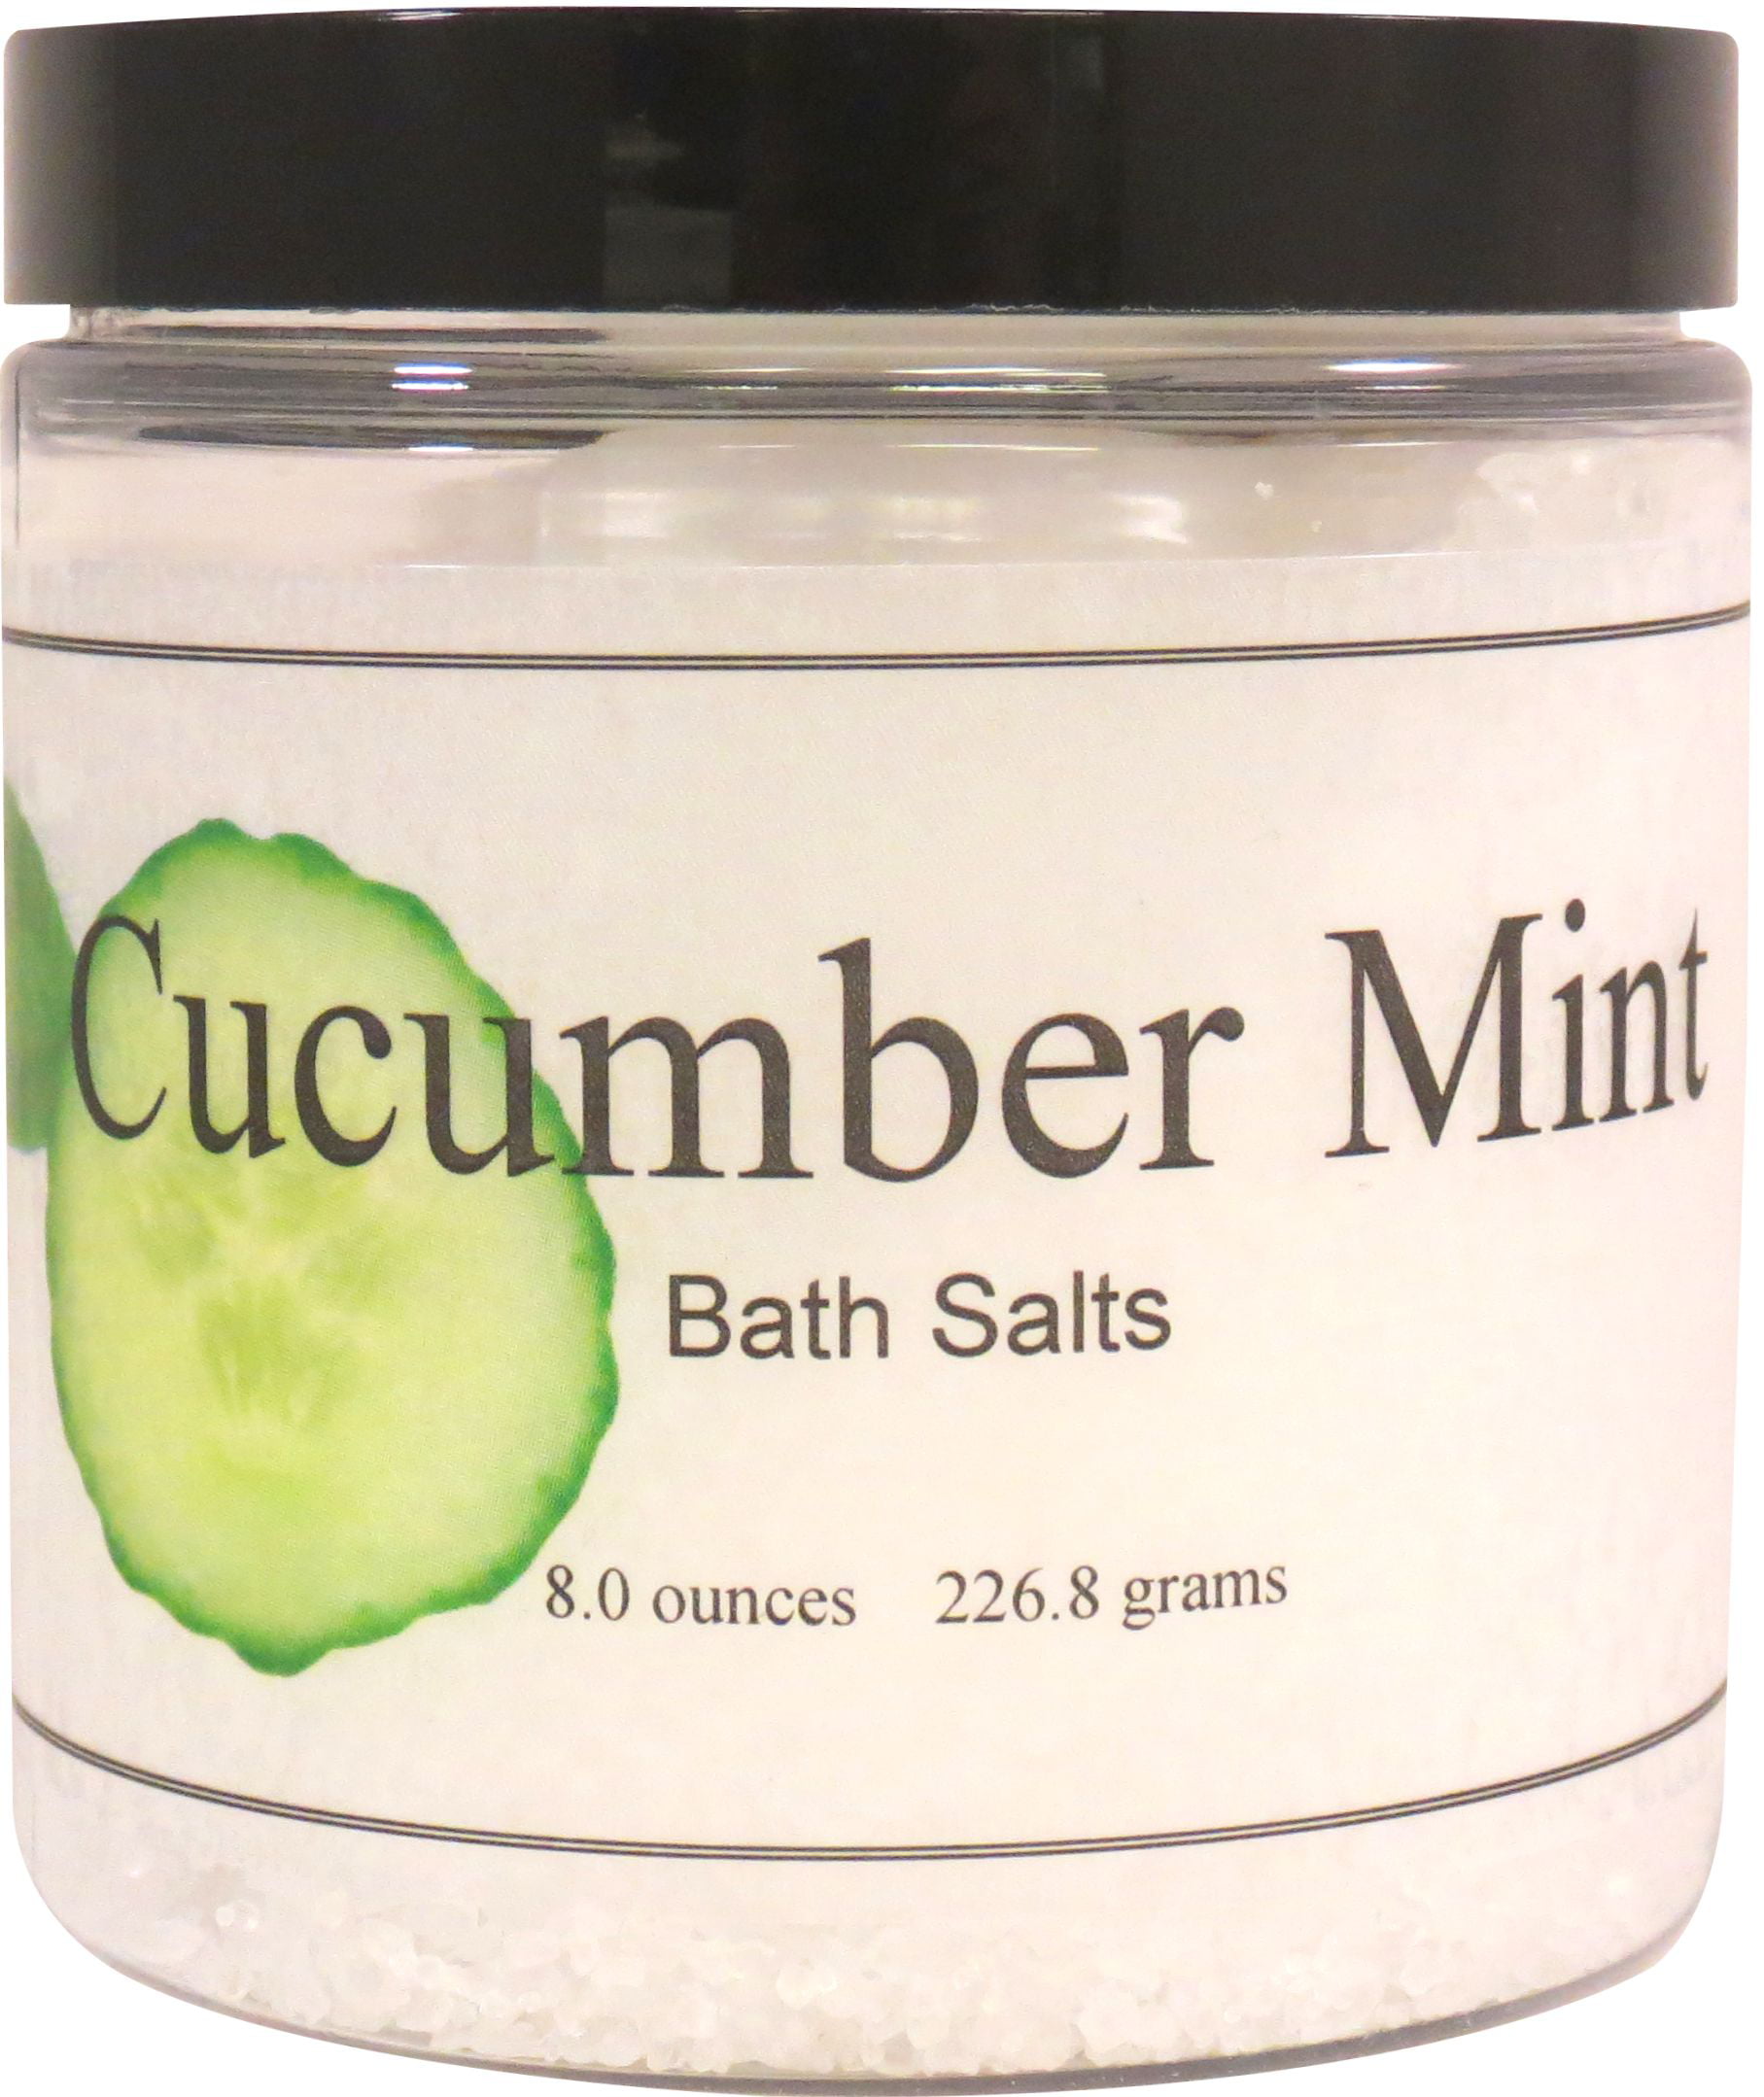 Cucumber Mint Bath Salts, 8 ounces - Walmart.com